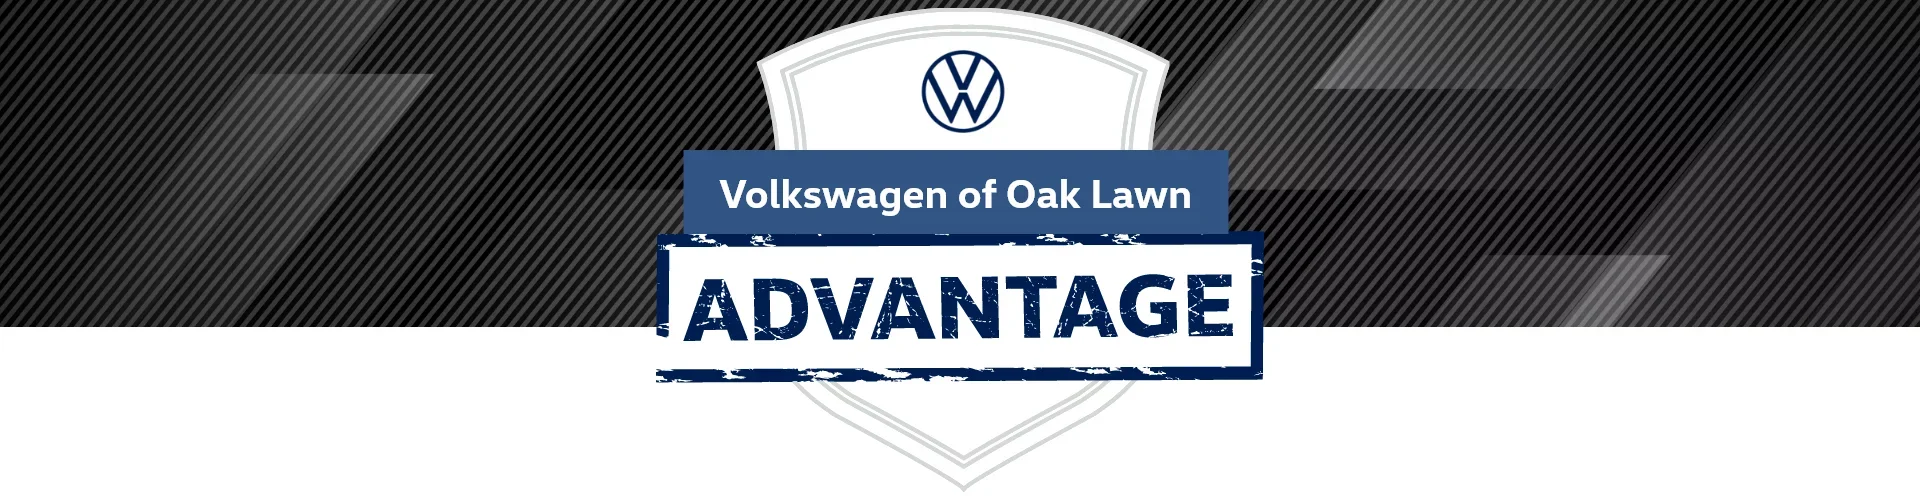 Volkswagen of Oak Lawn in Oak Lawn IL